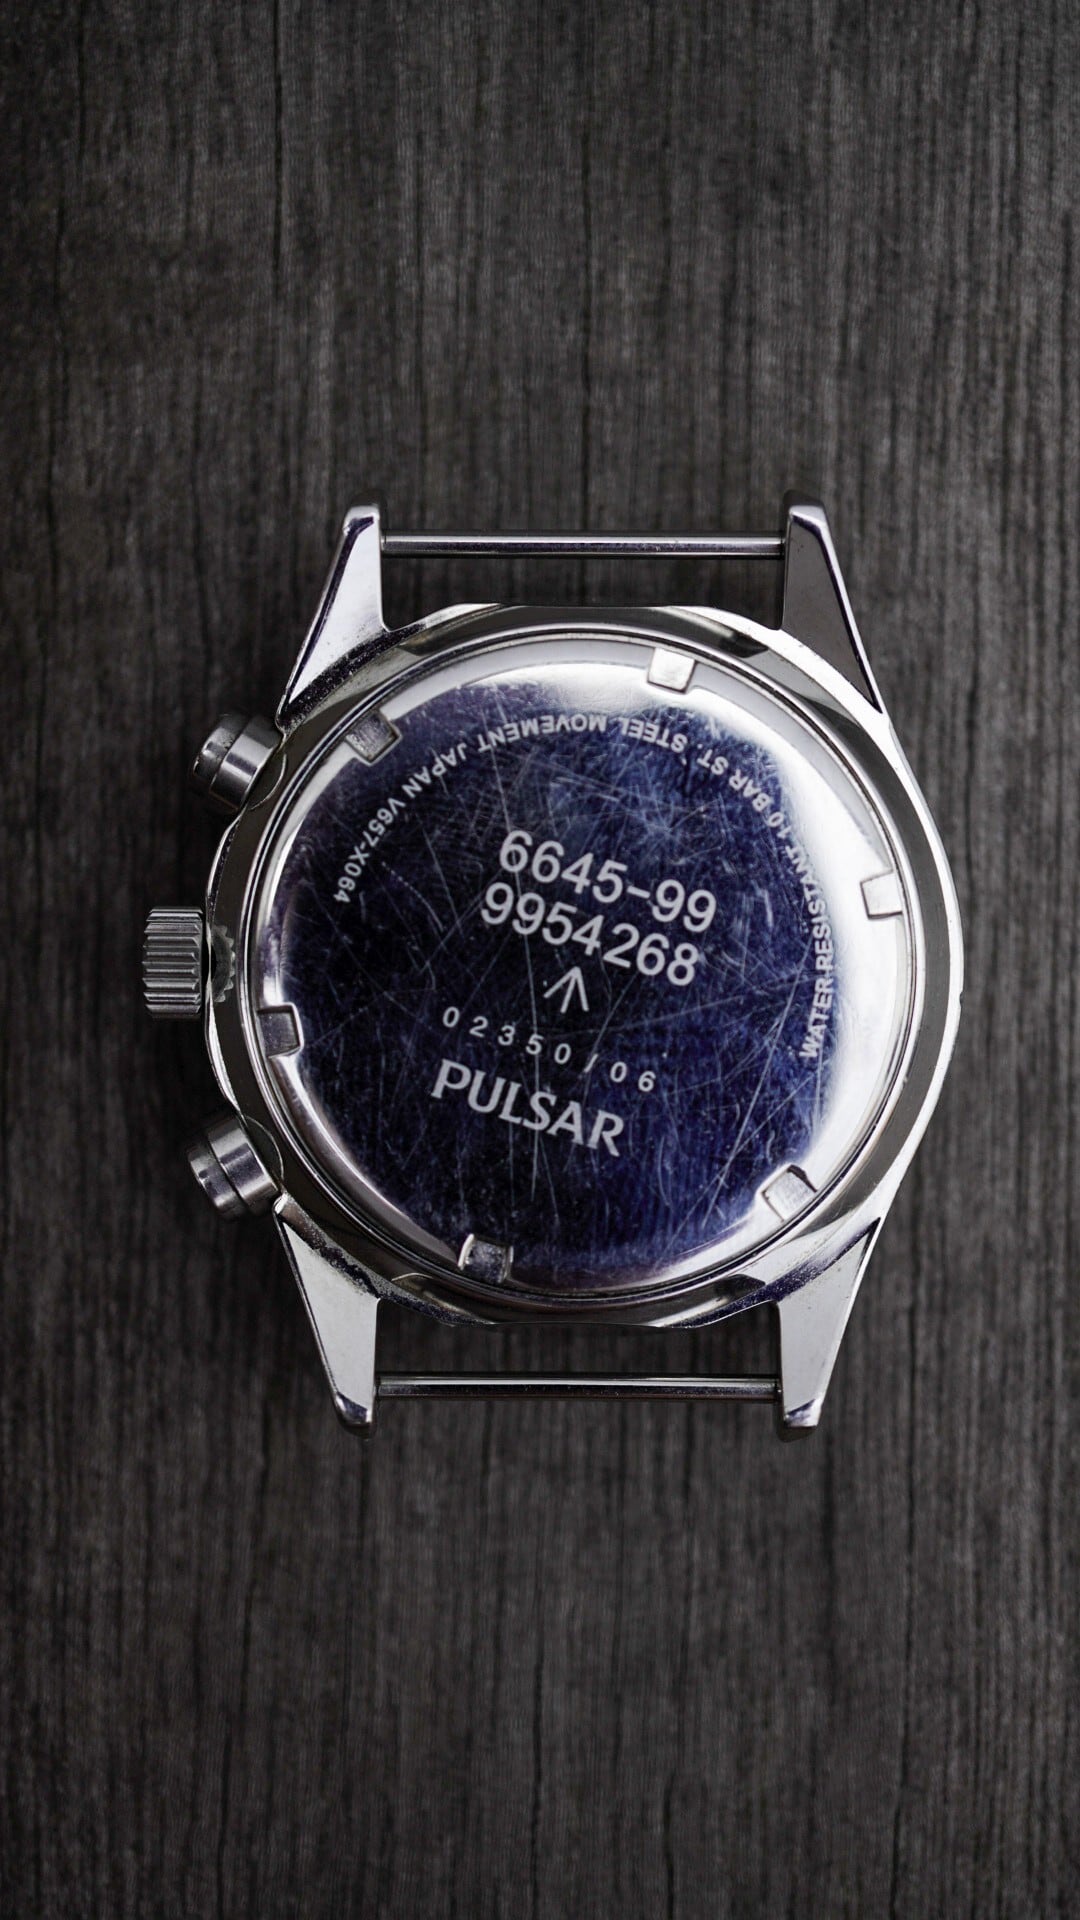 SEIKO セイコー PULSAR パルサー クロノグラフ 腕時計 - 時計